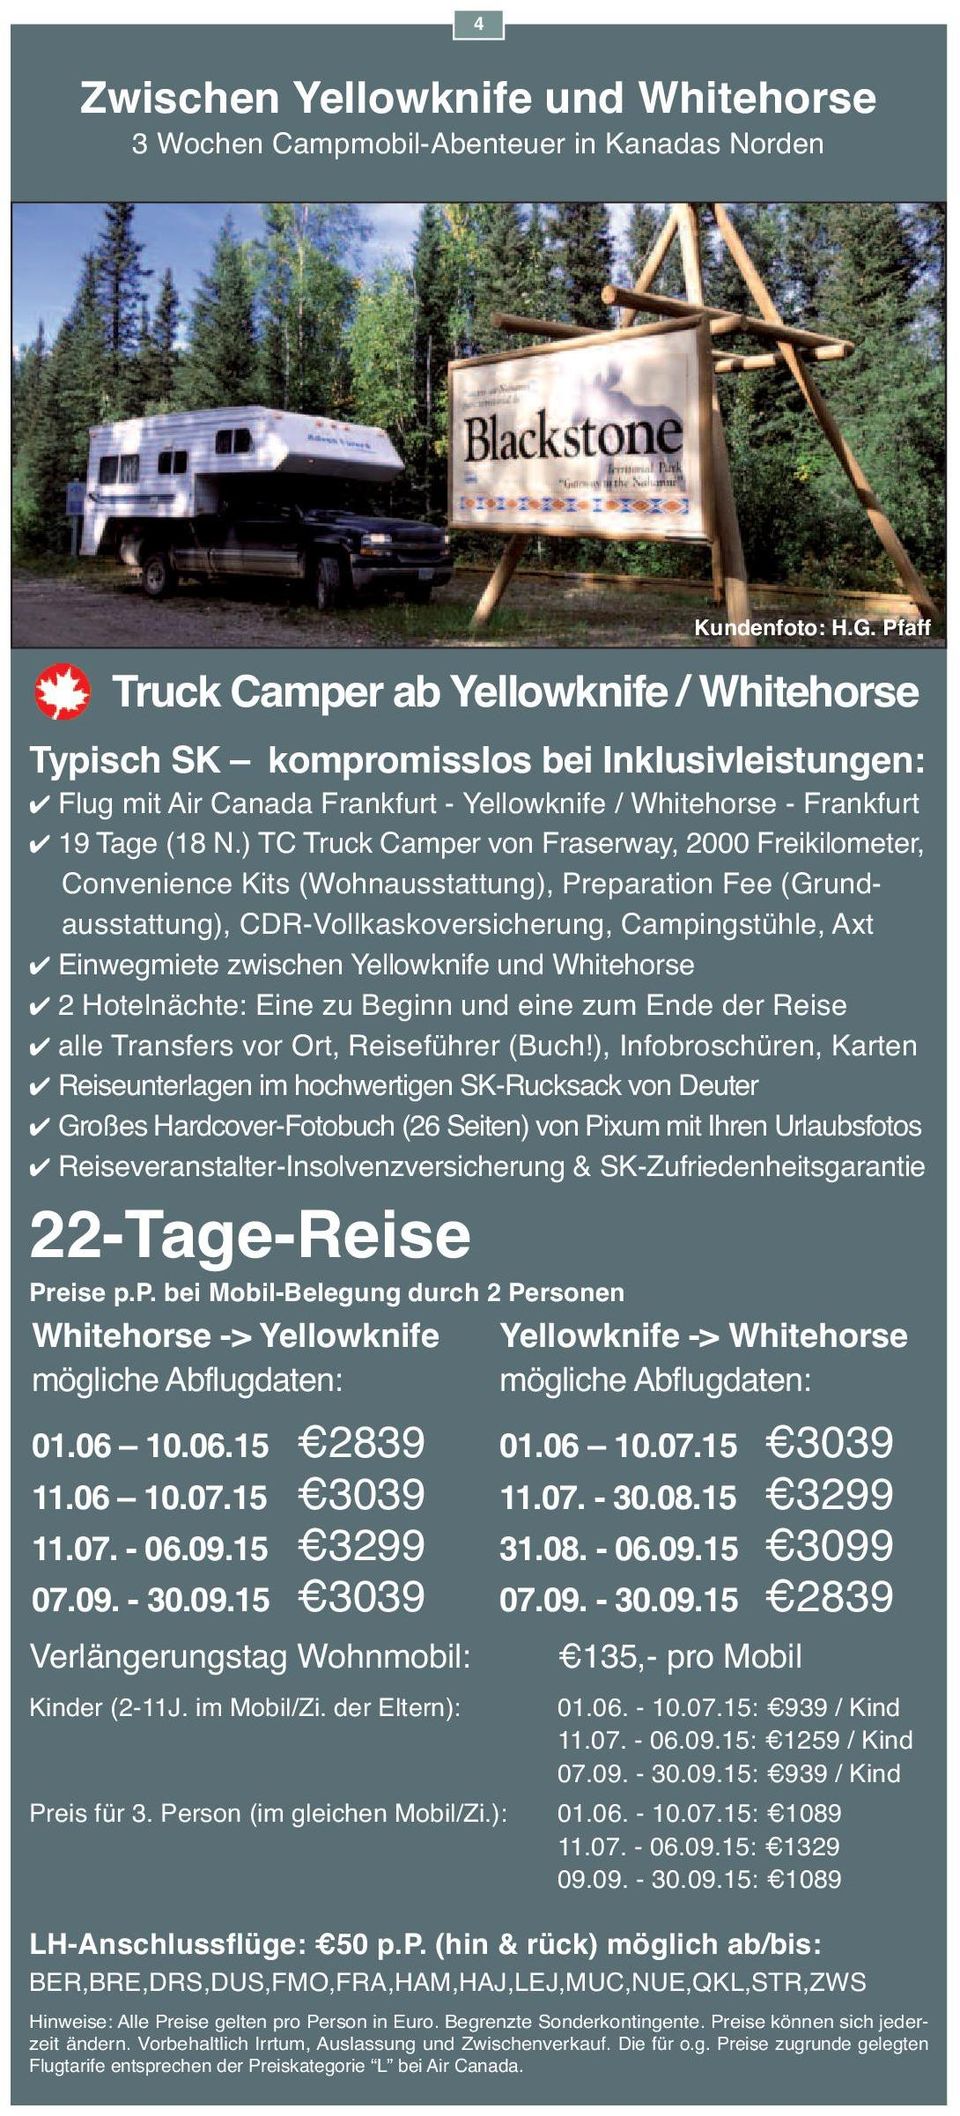 ) TC Truck Camper von Fraserway, 2000 Freikilometer, Convenience Kits (Wohnausstattung), Preparation Fee (Grundausstattung), CDR-Vollkaskoversicherung, Campingstühle, Axt 4 Einwegmiete zwischen